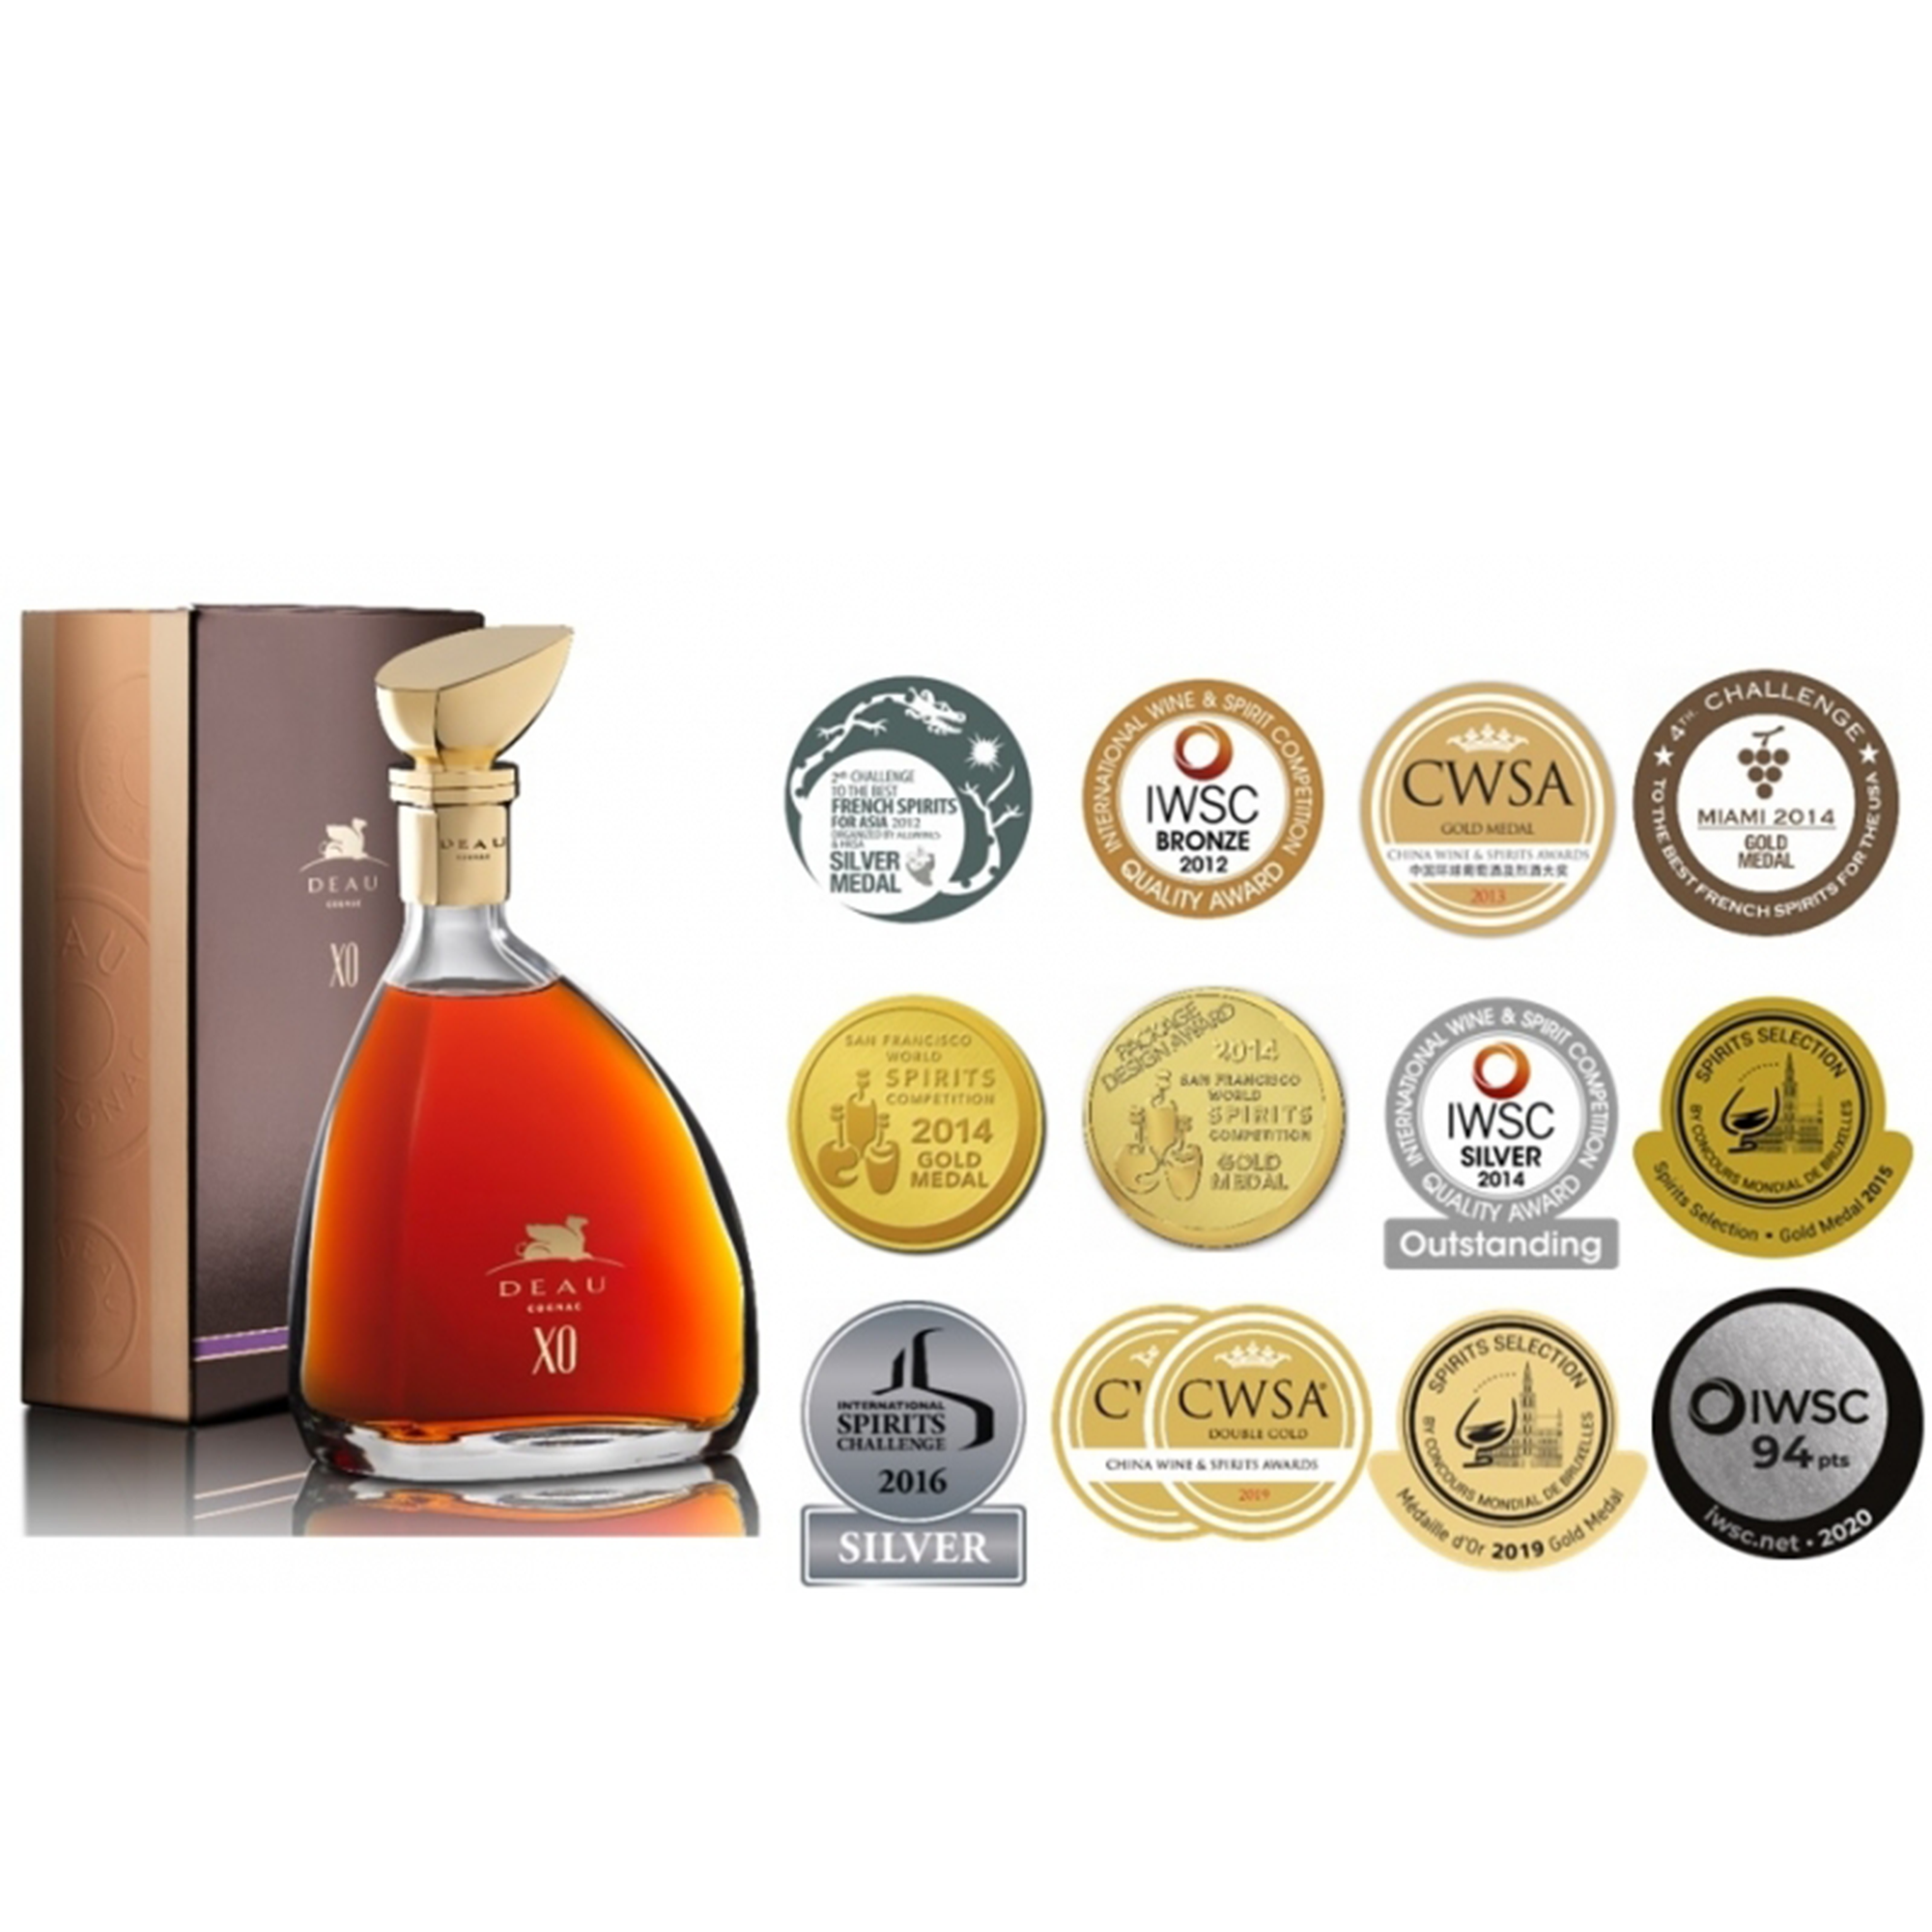 Deau Cognac XO (750ML)